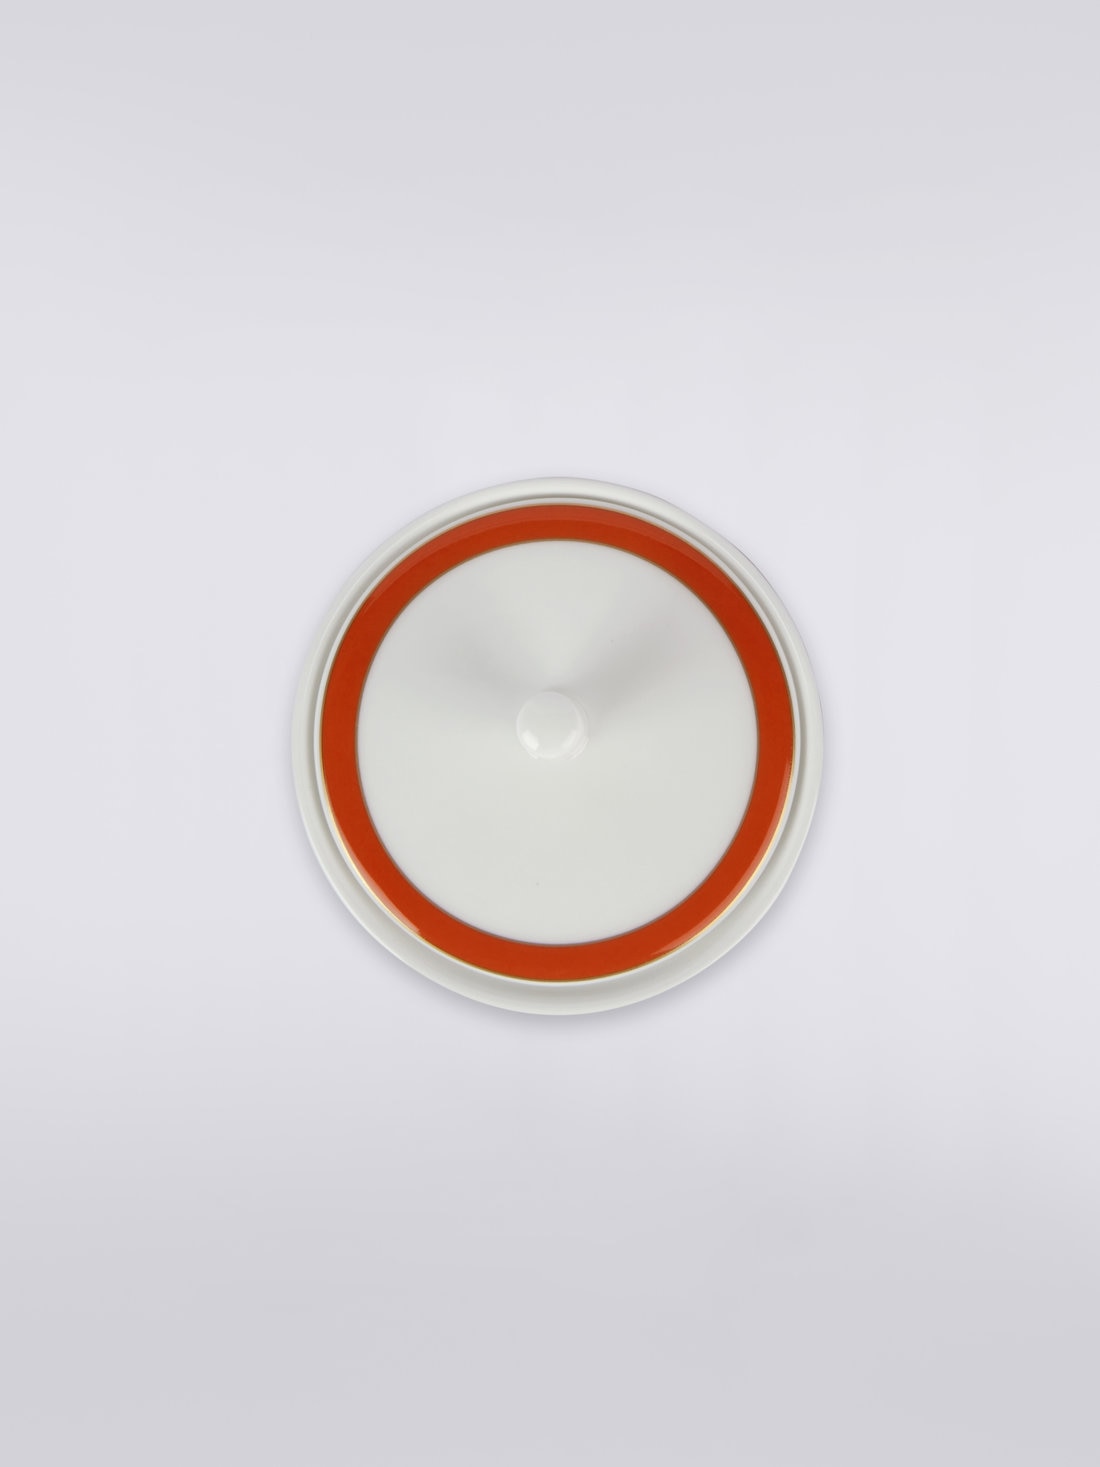 Nastri sugar bowl , Multicoloured  - 8051575977602 - 2